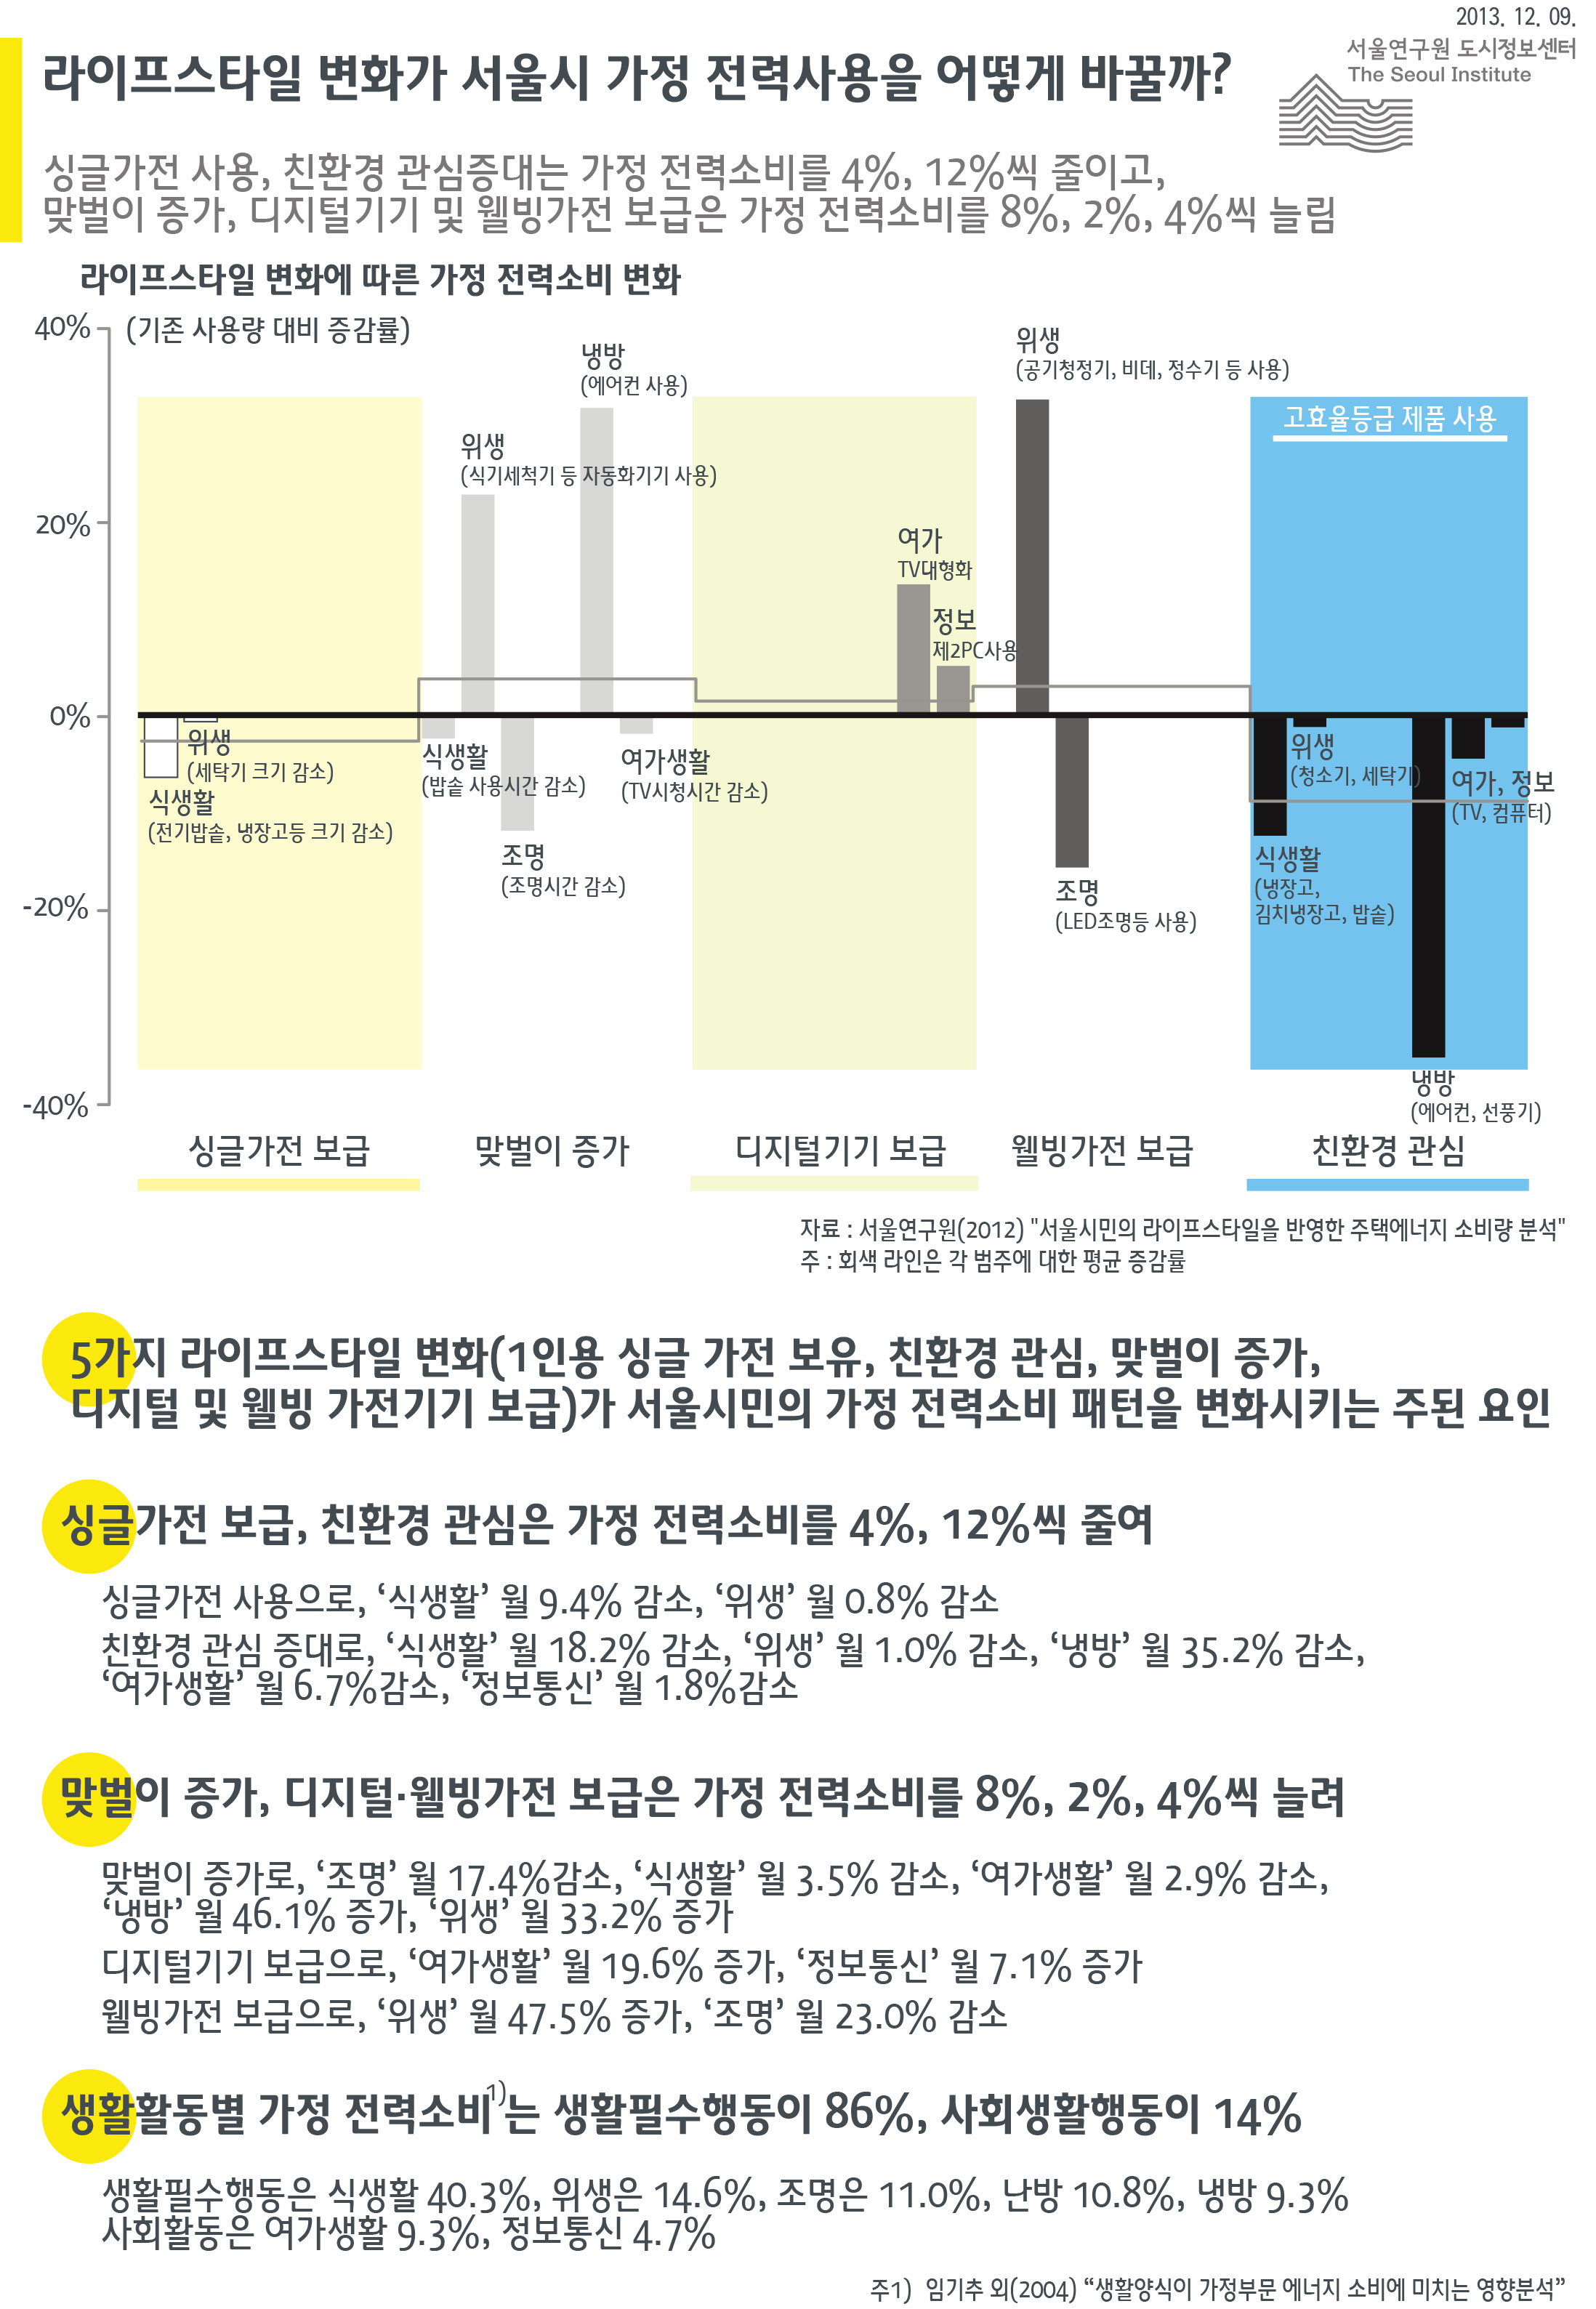 라이프스타일 변화가 서울시 가정 전력사용을 어떻게 바꿀까? 서울인포그래픽스 제63호 2013년 12월 9일 싱글가전 사용, 친환경 관심증대는 가정 전력소비를 4%, 12%씩 줄이고, 맞벌이 증가, 디지털기기 및 웰빙가전 보급은 가정 전력소비를 8%, 2%, 4%씩 늘림으로 정리될 수 있습니다. 인포그래픽으로 제공되는 그래픽은 하단에 표로 자세히 제공됩니다.